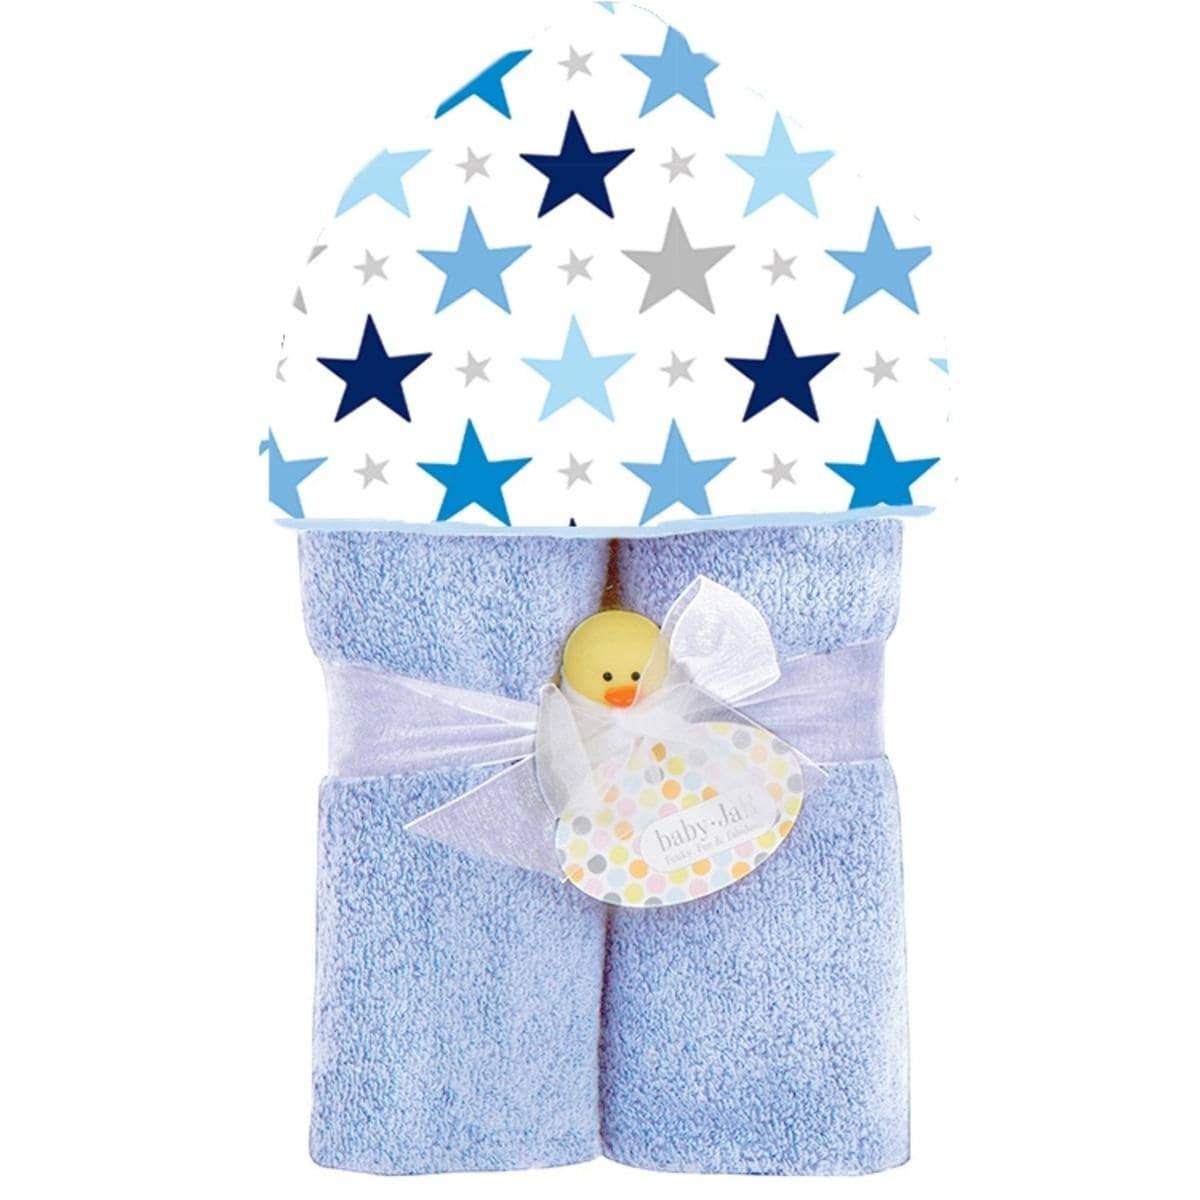 Stars Plush Deluxe Hooded Towel - Twinkle Twinkle Little One